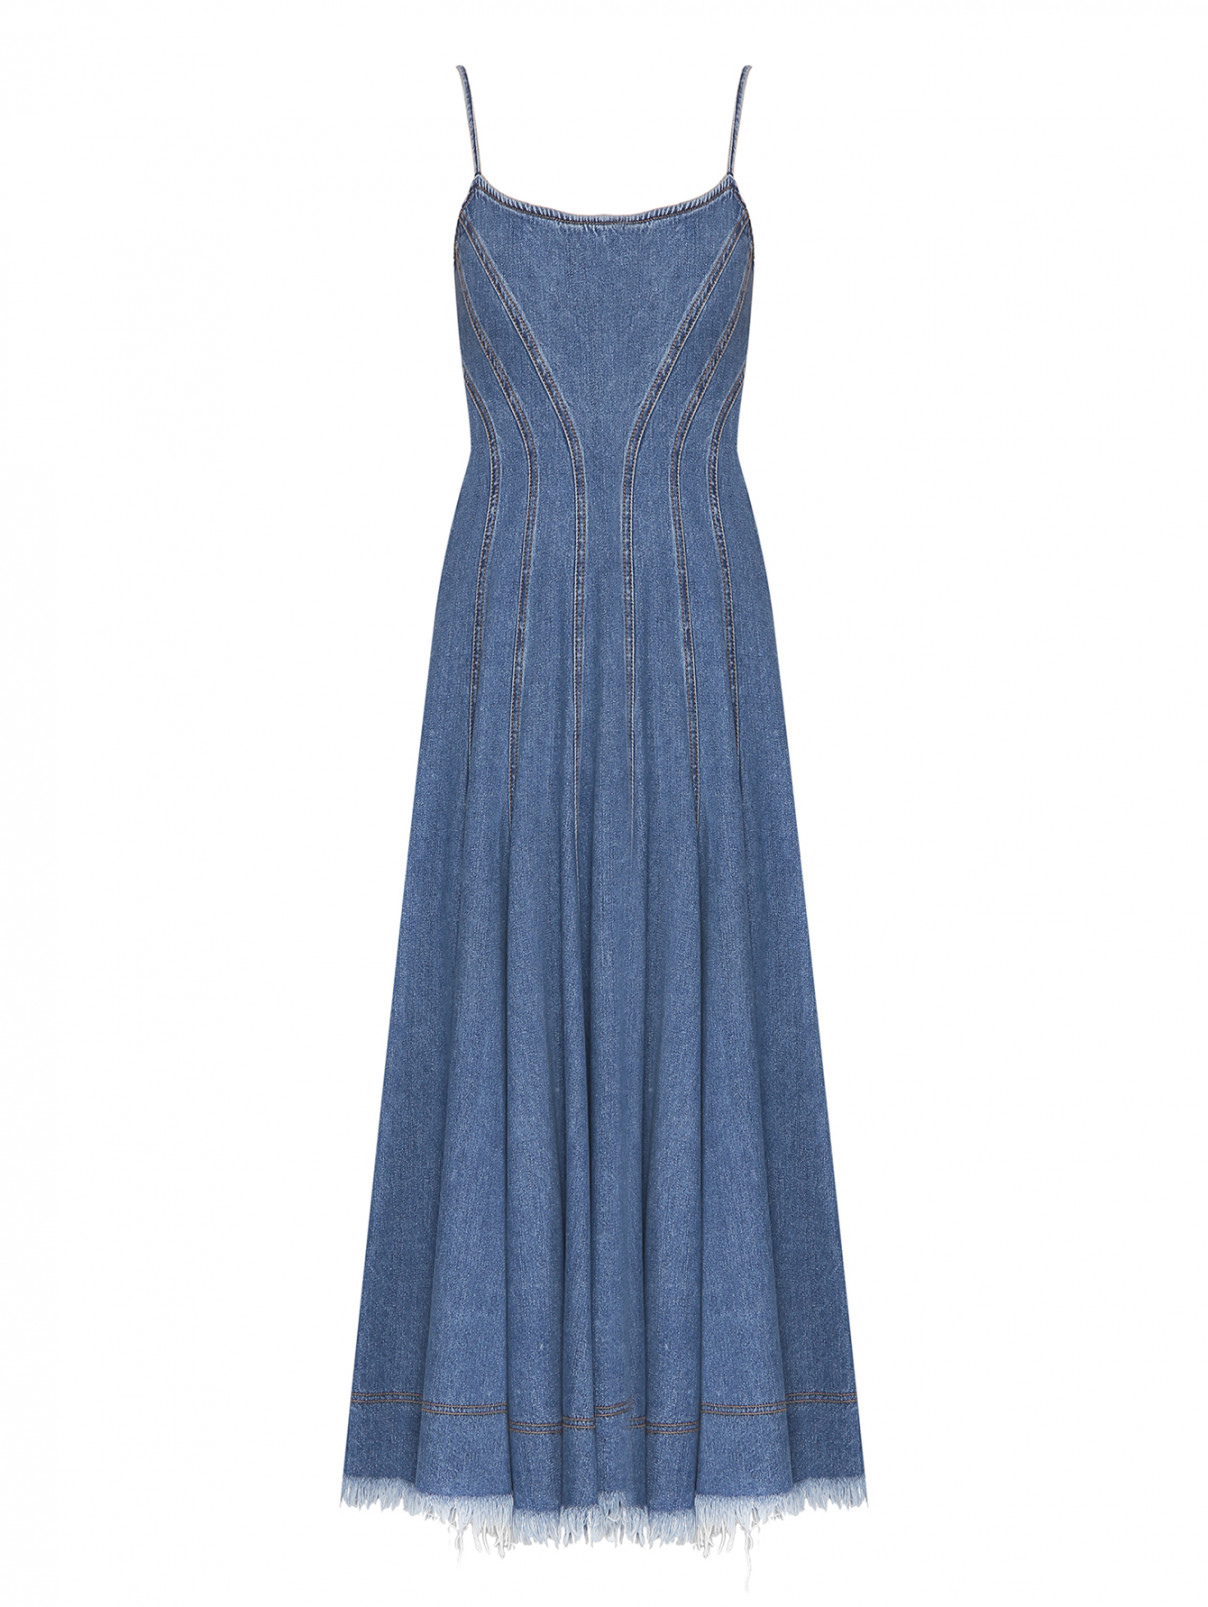 Платье из денима расклешенного кроя с бахромой Sportmax  –  Общий вид  – Цвет:  Синий